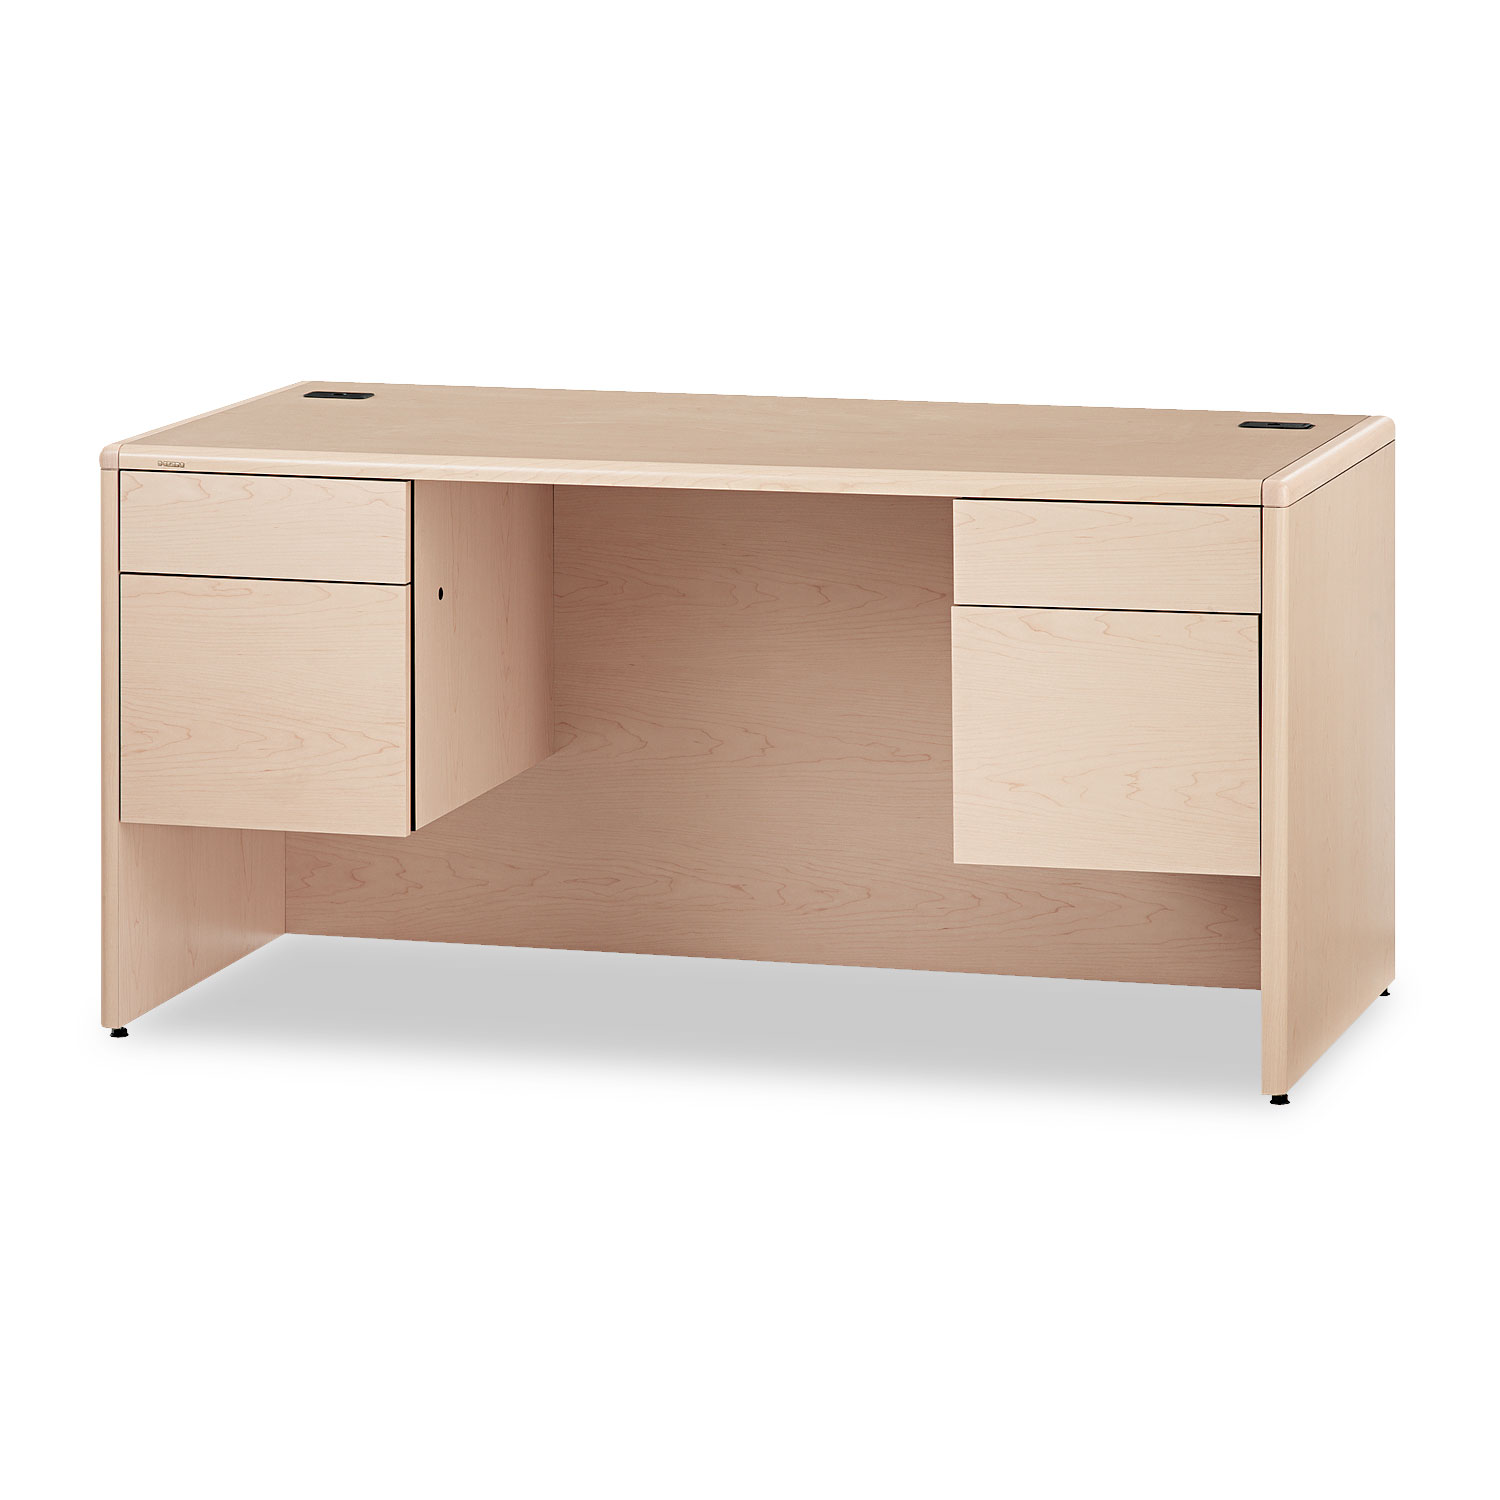  HON H10771.DD 10700 Series Desk, 3/4 Height Double Pedestals, 60w x 30d x 29.5h, Natural Maple (HON10771DD) 